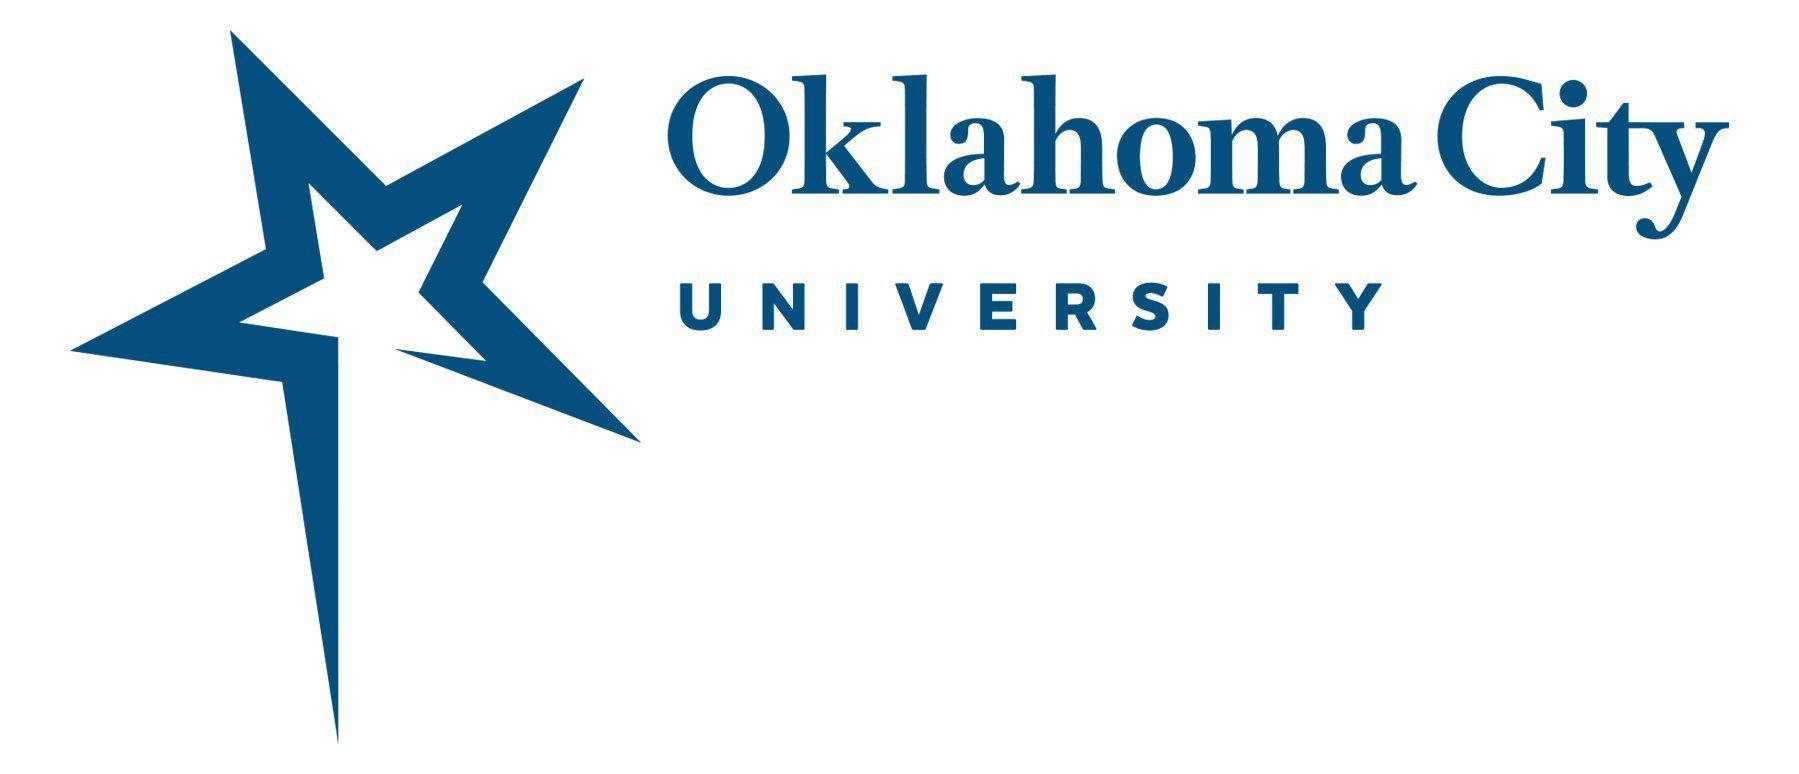 Ocu Logo - Official Logos - Oklahoma City University